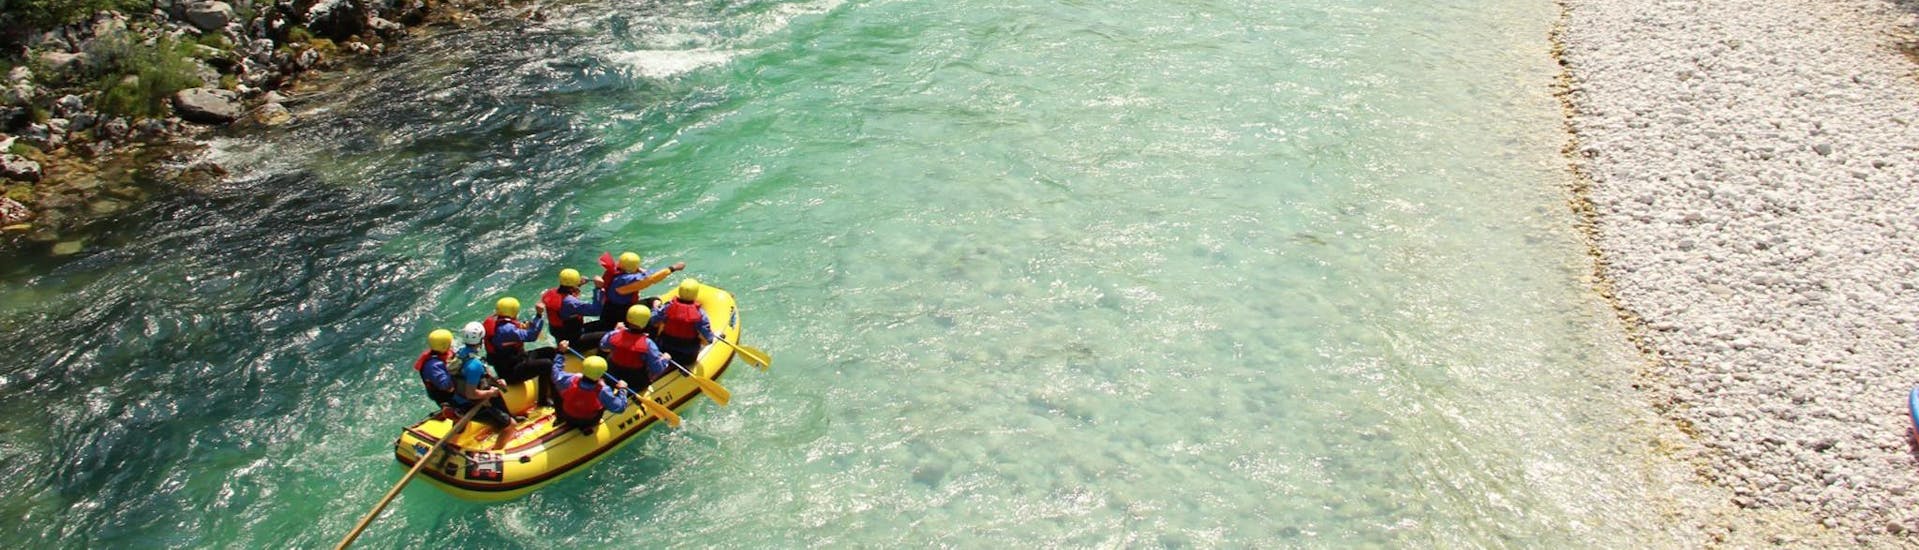 Un groupe de participants fera du rafting en eau vive sur un passage calme dans la vallée de la Soča - Circuit standard avec le centre TOP Rafting.